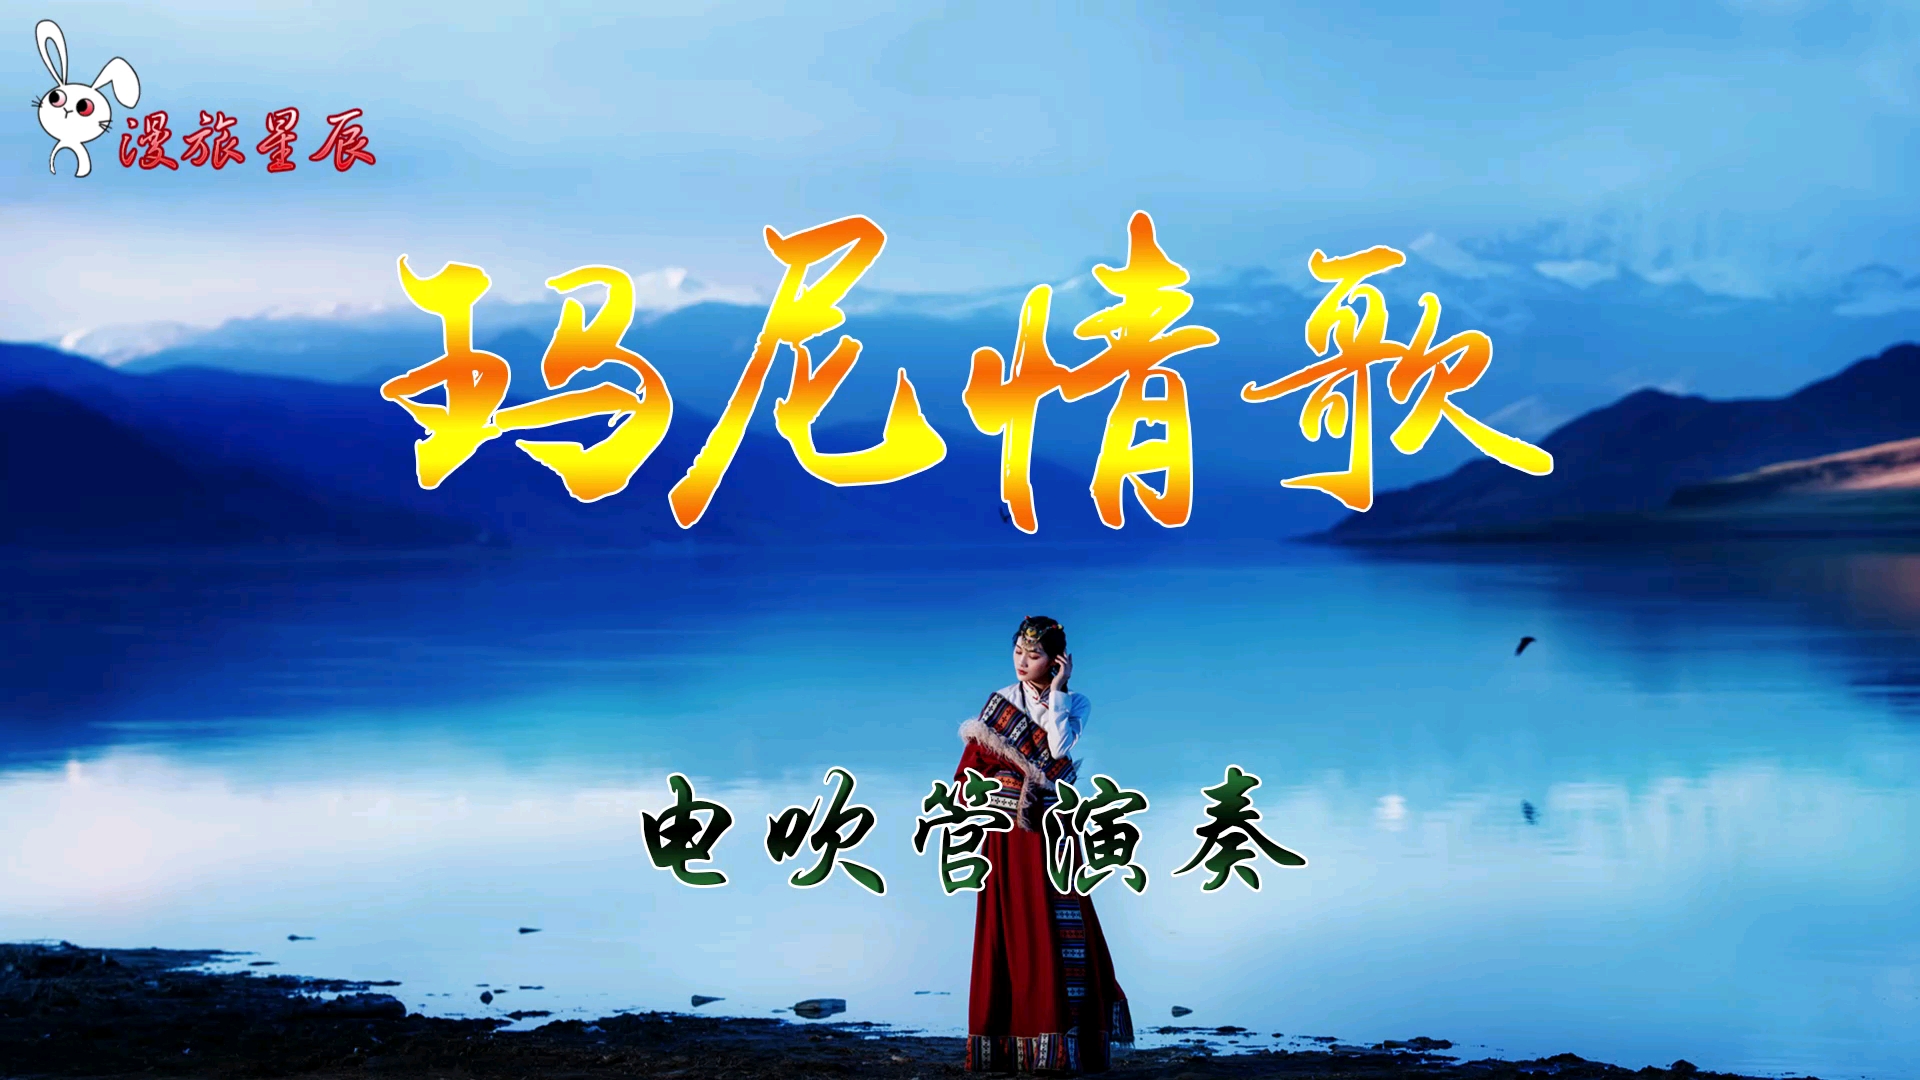 藏族爱情歌曲玛尼情歌电吹管演奏藏域风情爱音乐爱生活